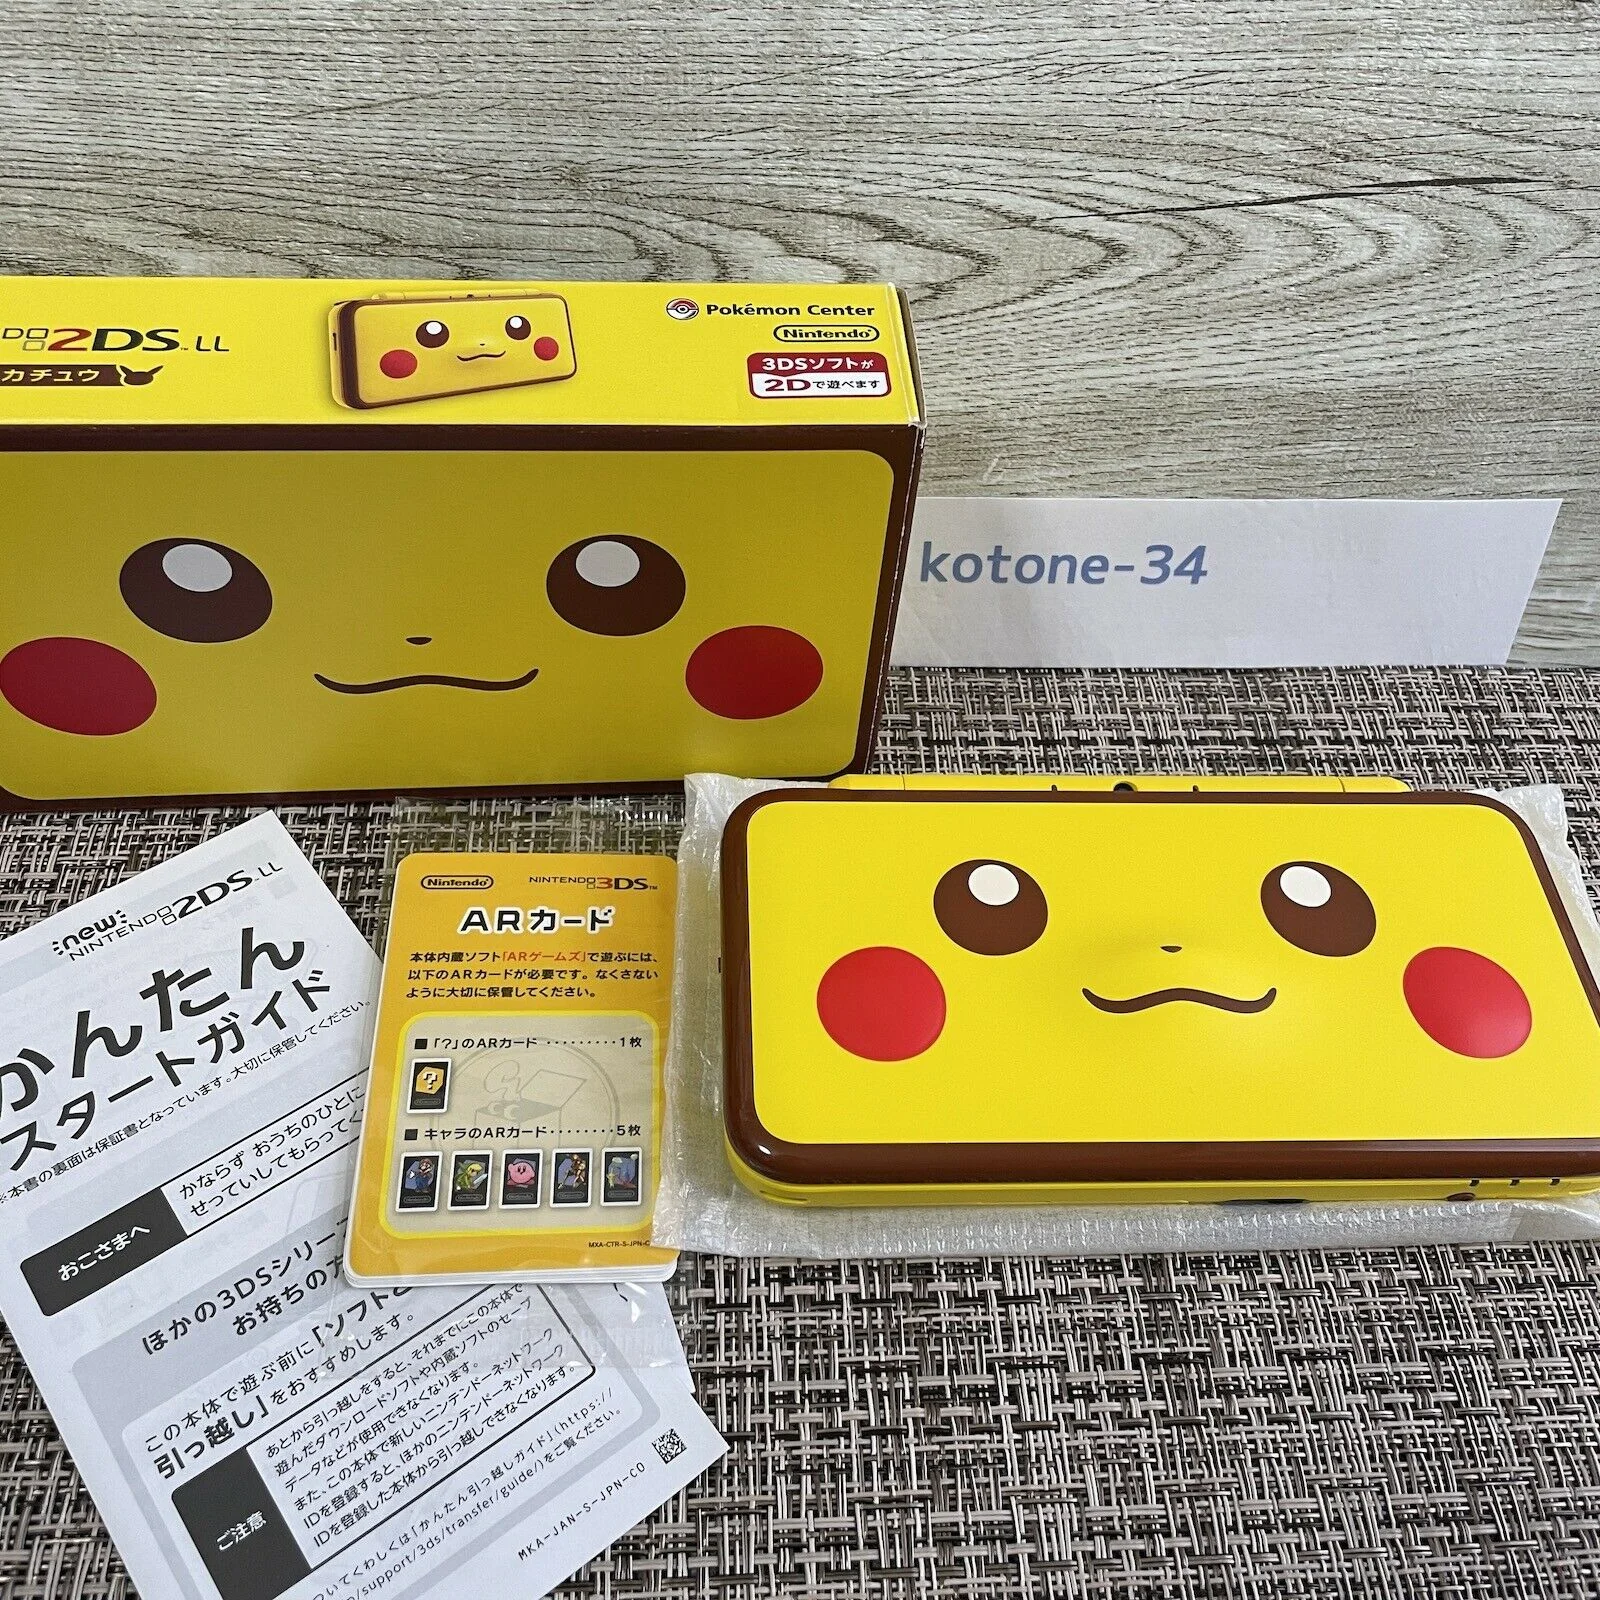  New Nintendo 2DS LL Pikachu Console [JP]